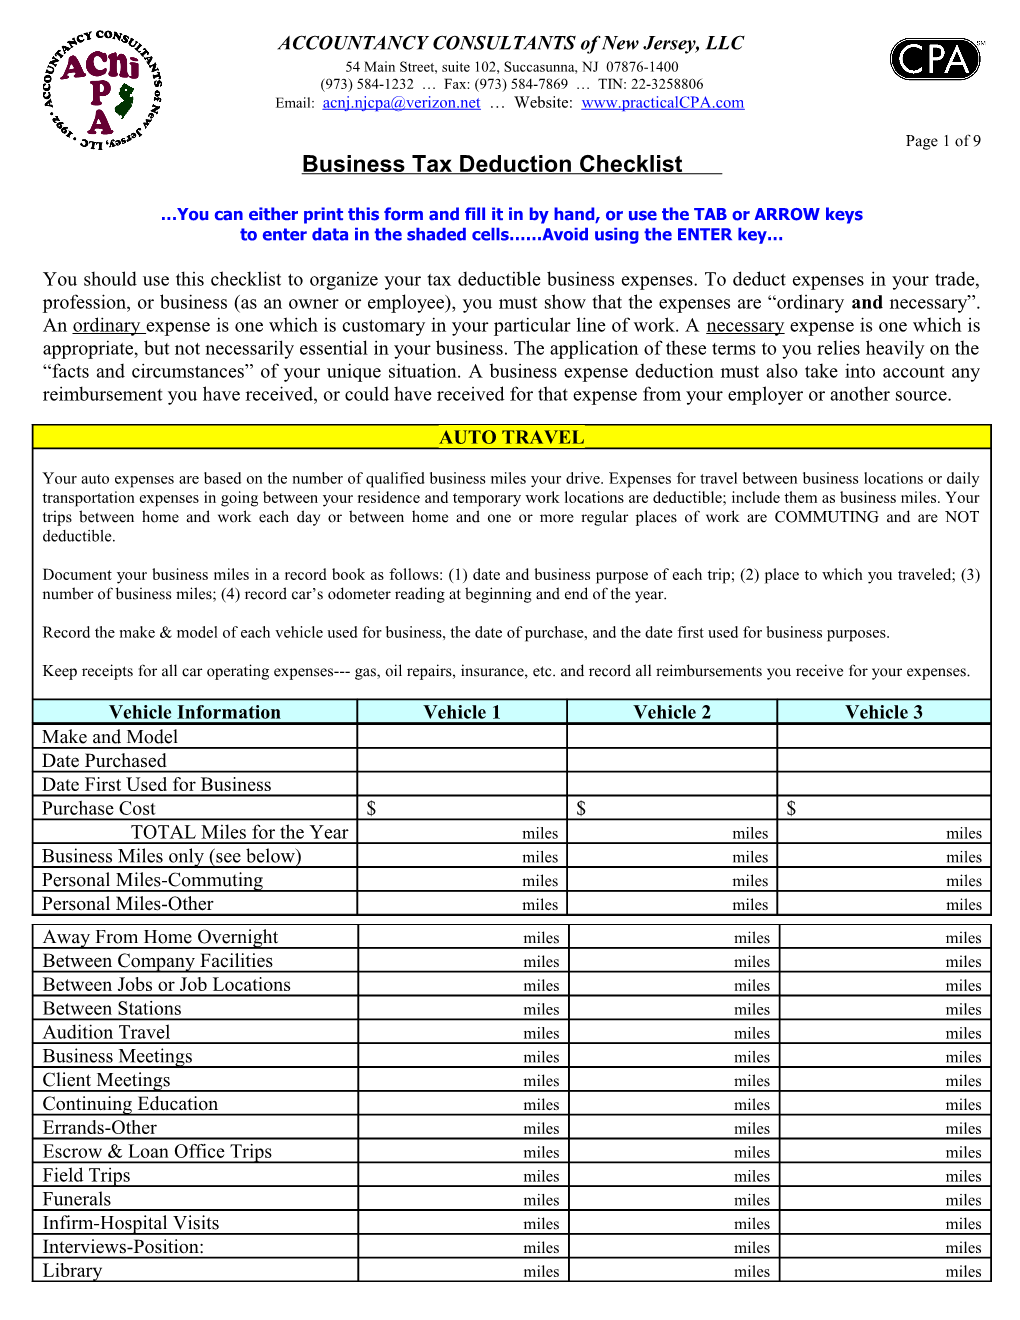 Income Tax Deduction Checklist REALTORS